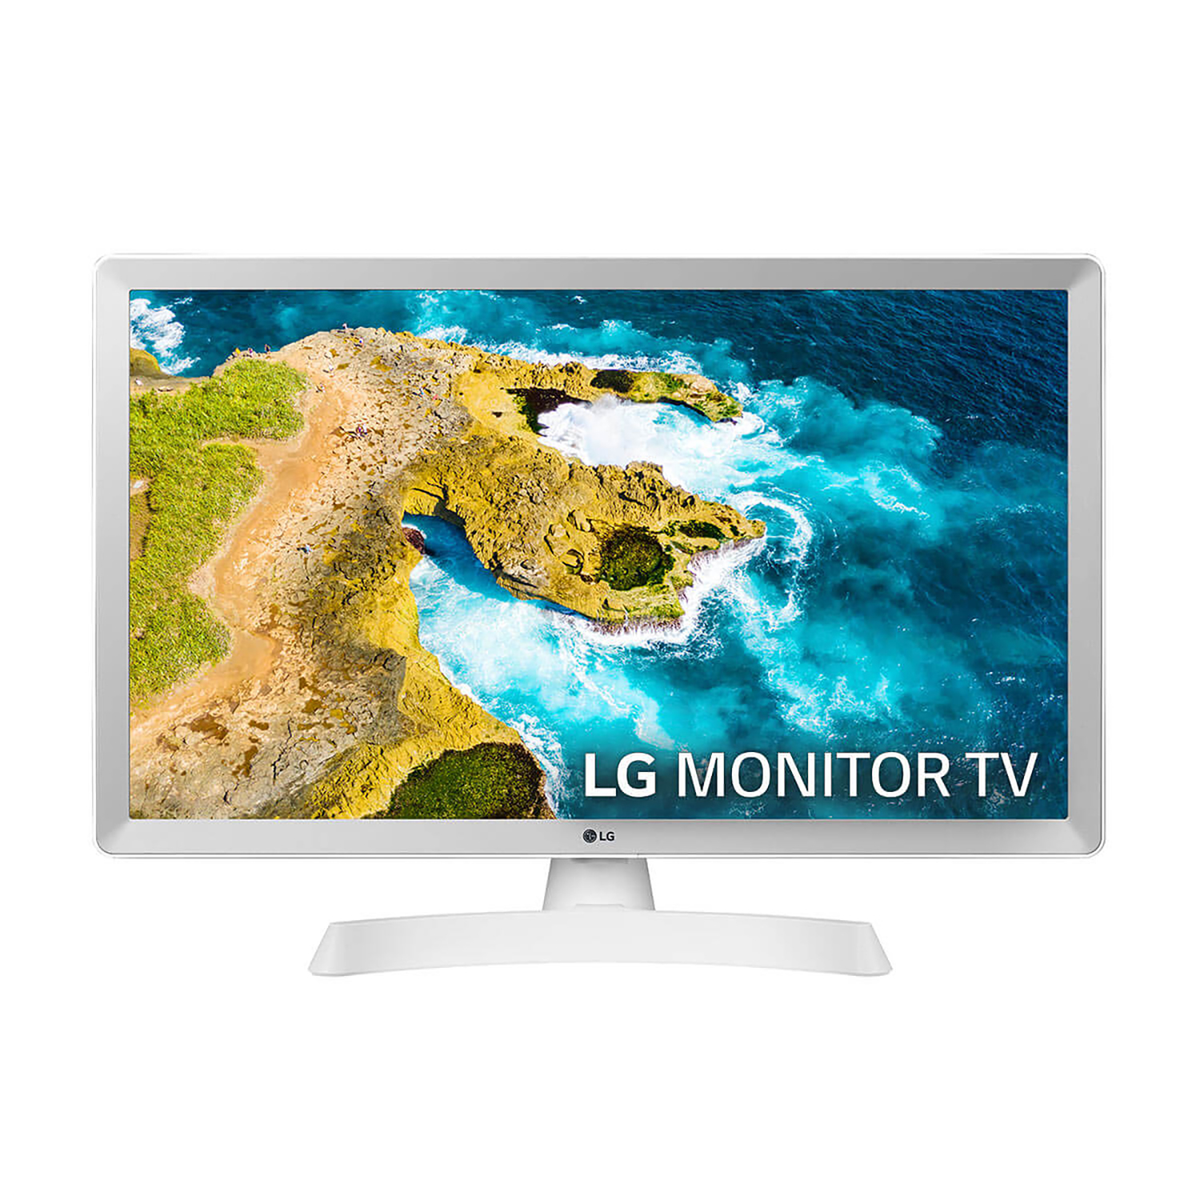 TV LED 24" - 24TQ510S-WZ LG, HD-ready, 24TQ510S-WZ, DVB-T2 (H.265)Sí, Blanco